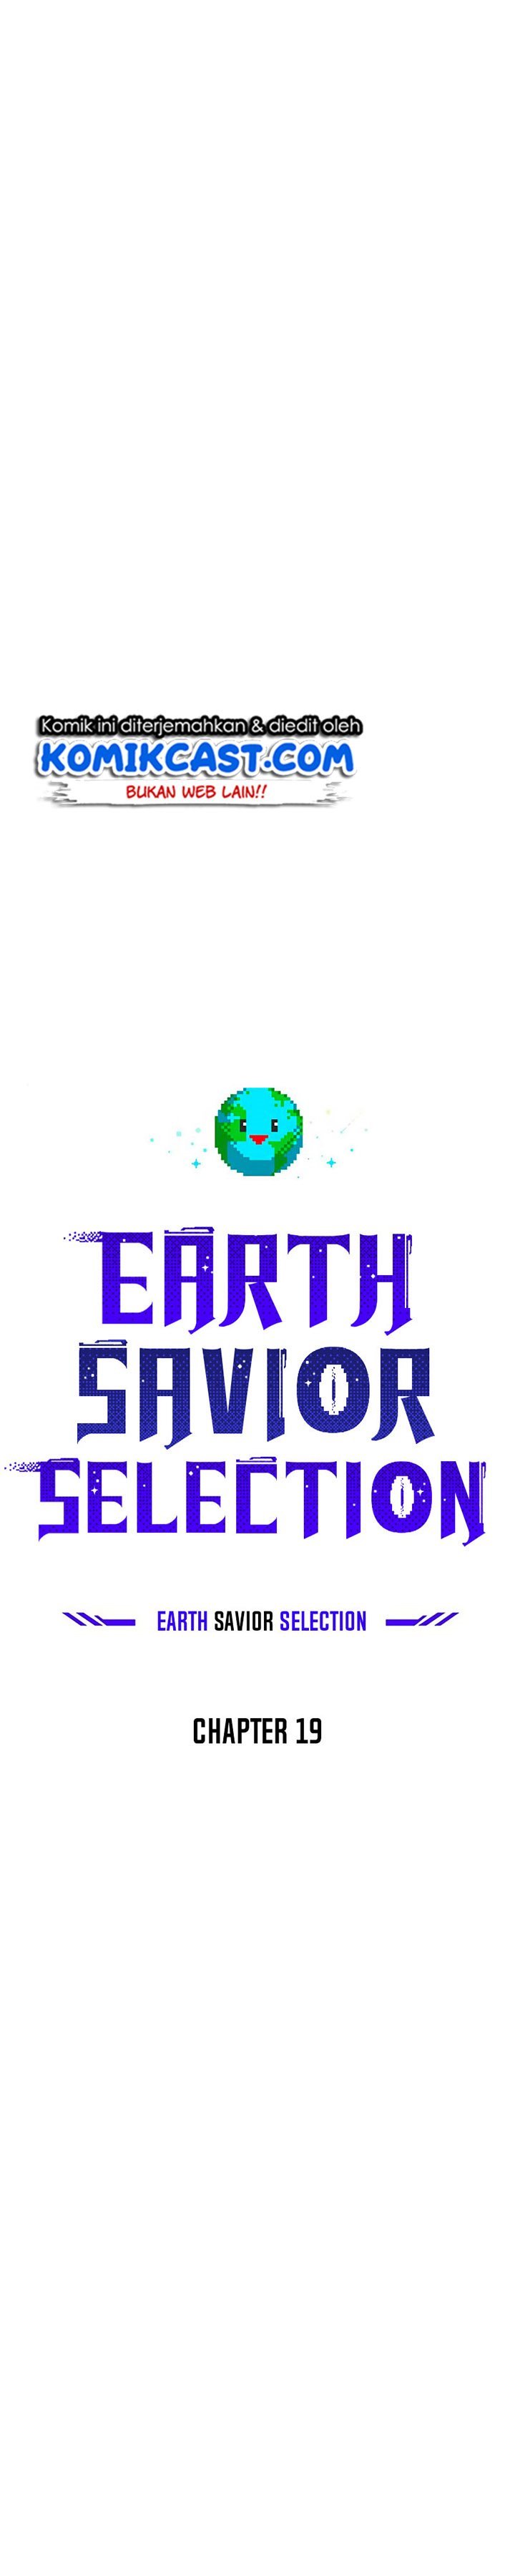 The Earth Savior Selection Chapter 19